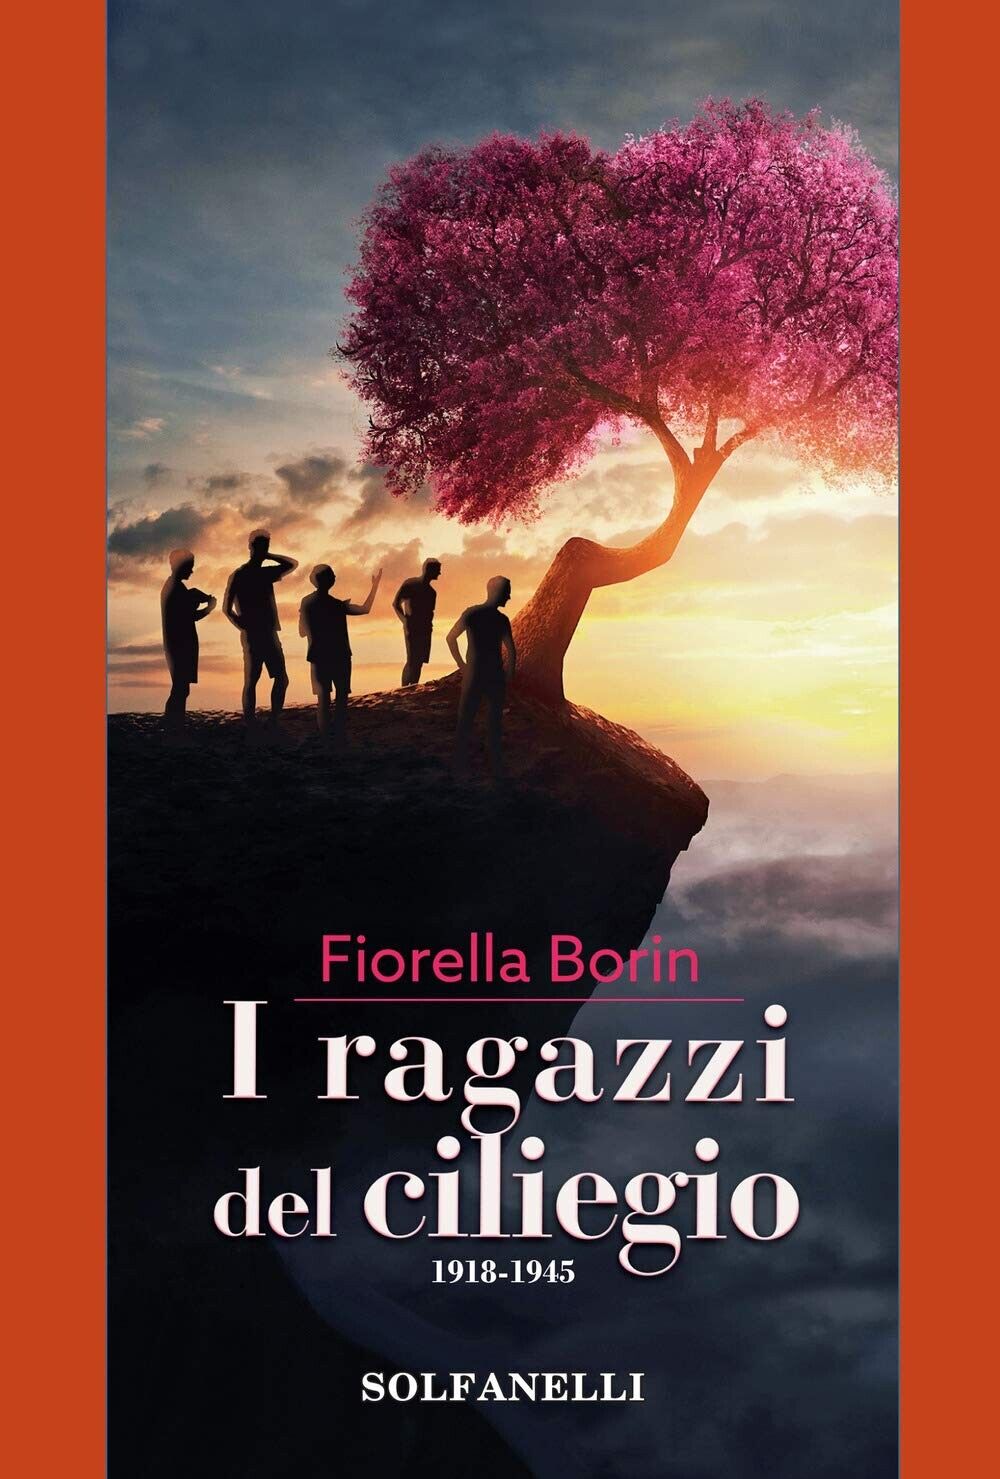 I ragazzi del ciliegio. 1918-1945 di Fiorella Borin, 2019, Solfanelli libro usato